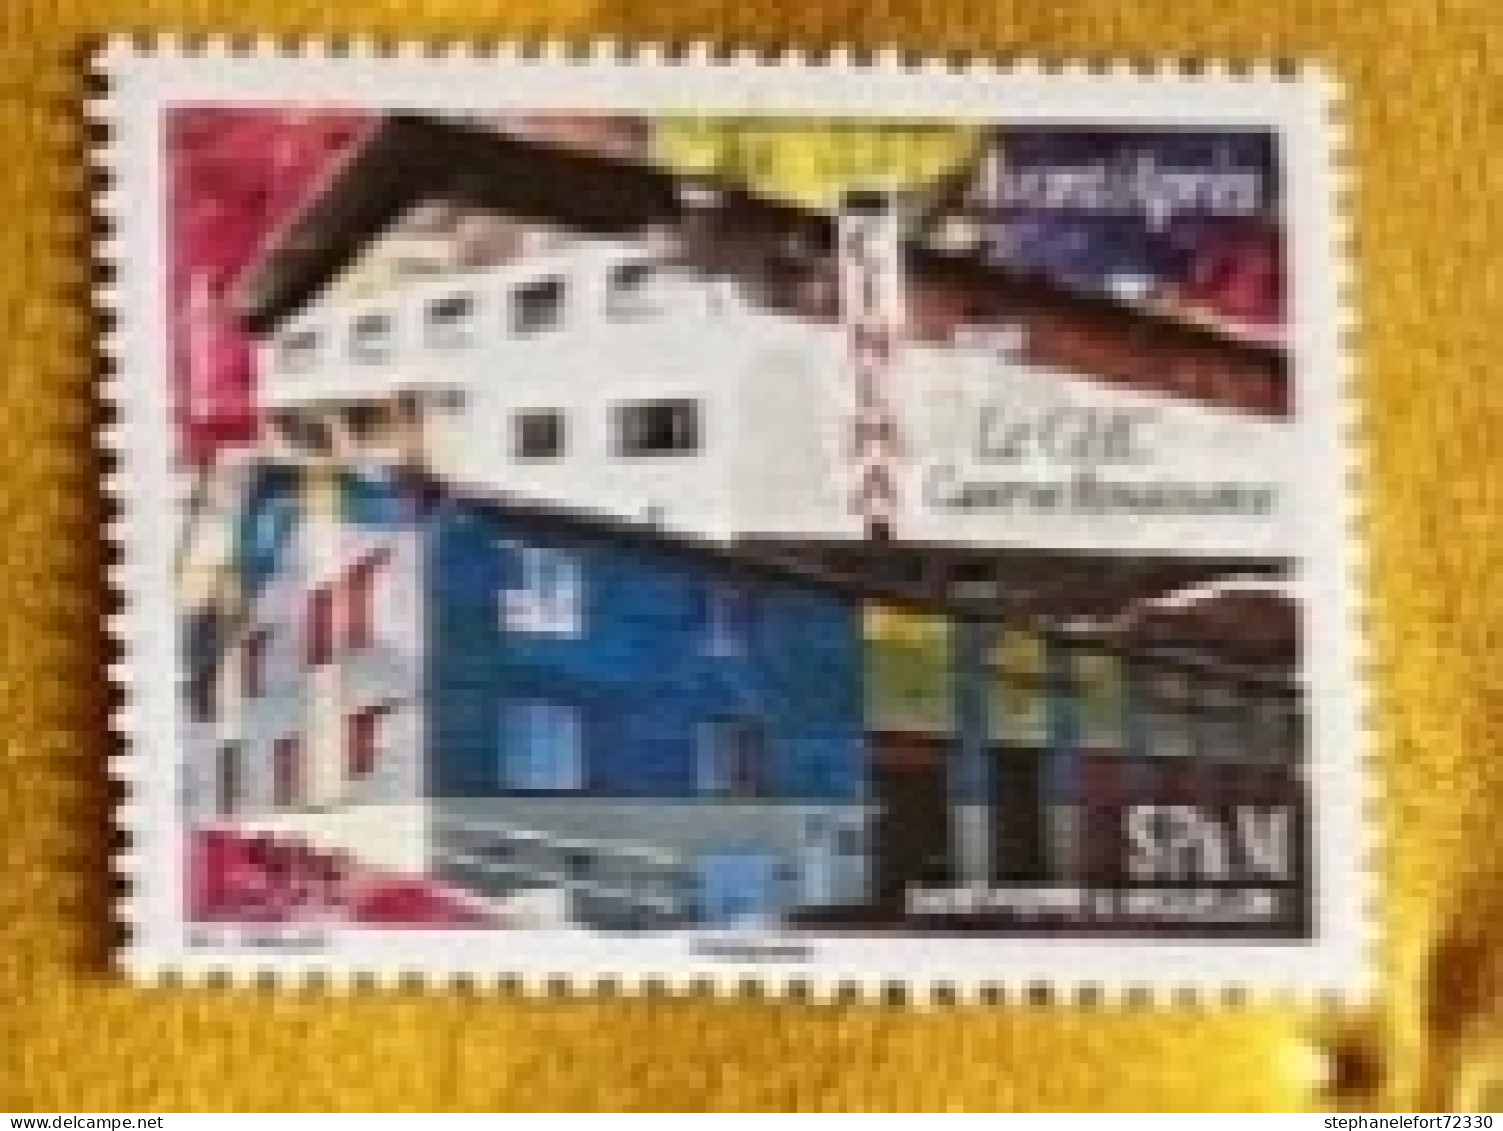 Saint Pierre Et Miquelon - YT N°1132 - Le GHC/Caserne Renaissance - 2015 - Neuf ** - Unused Stamps